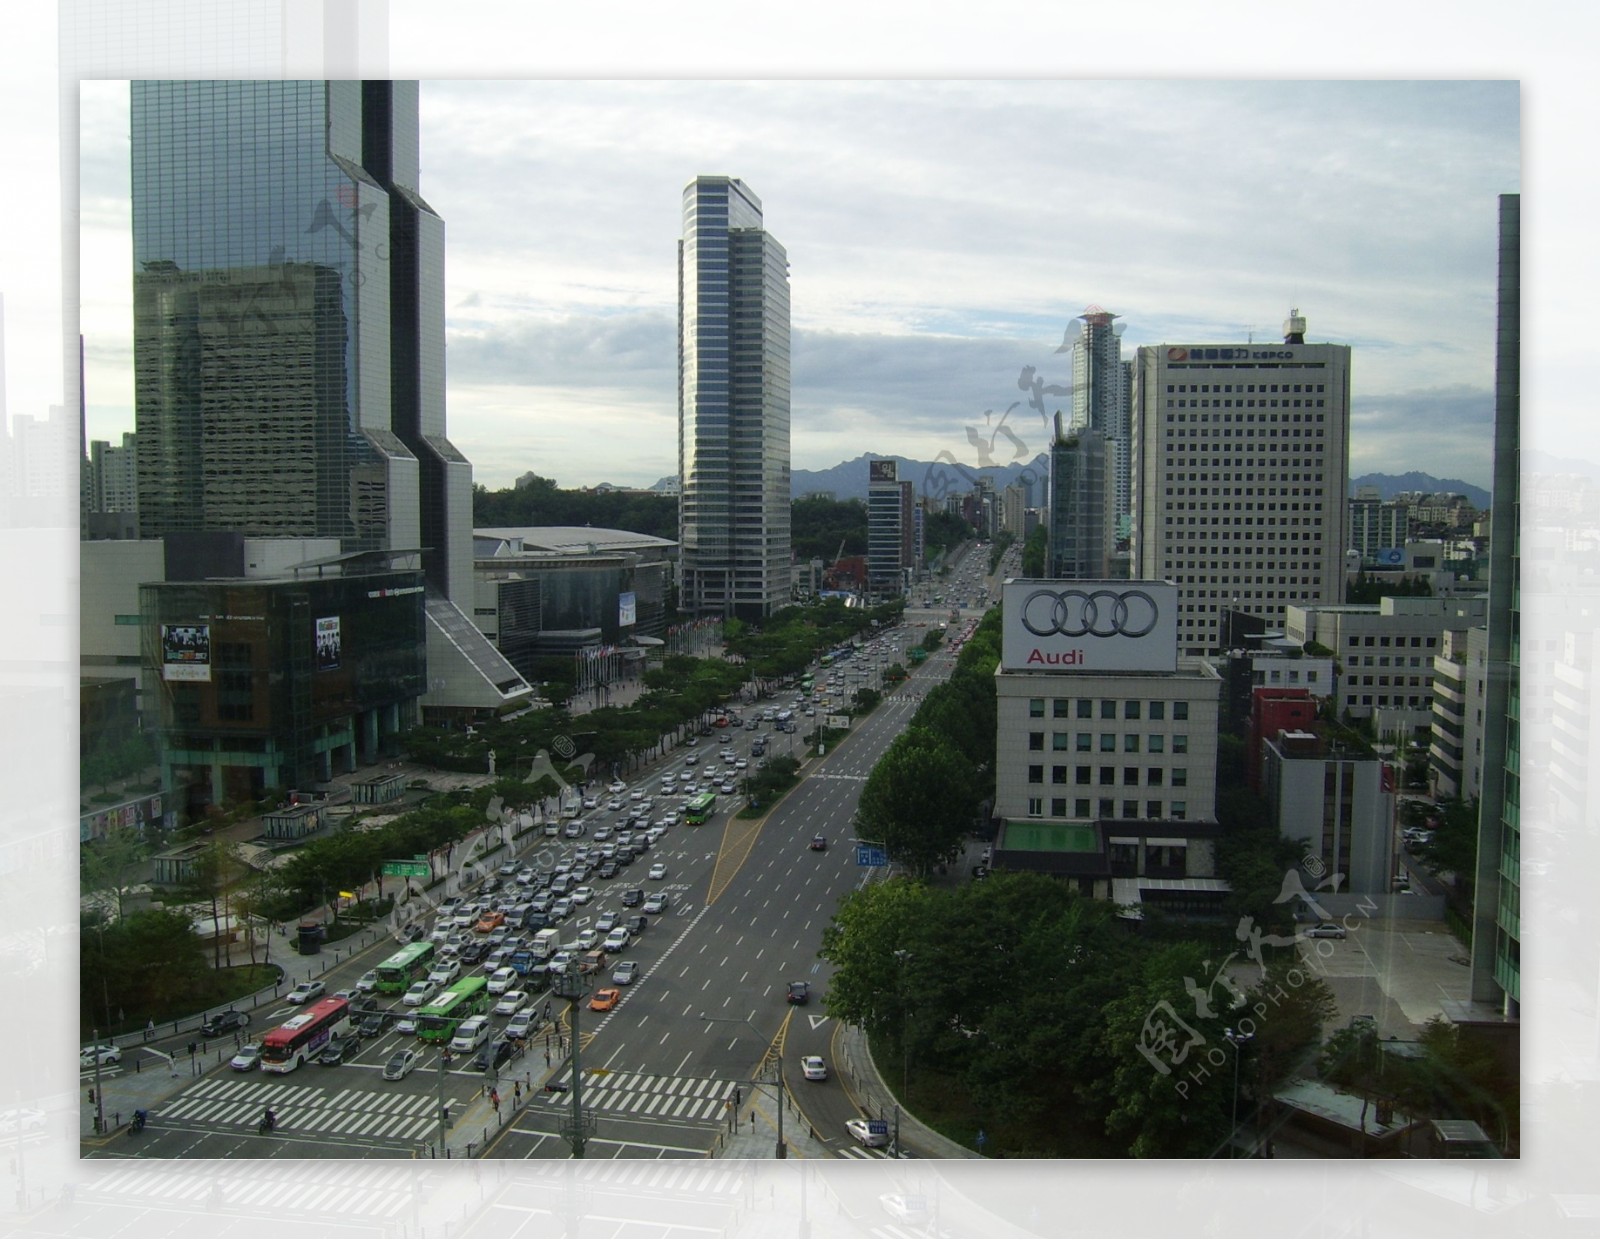 韩国首尔城市街道街景鸟瞰图片